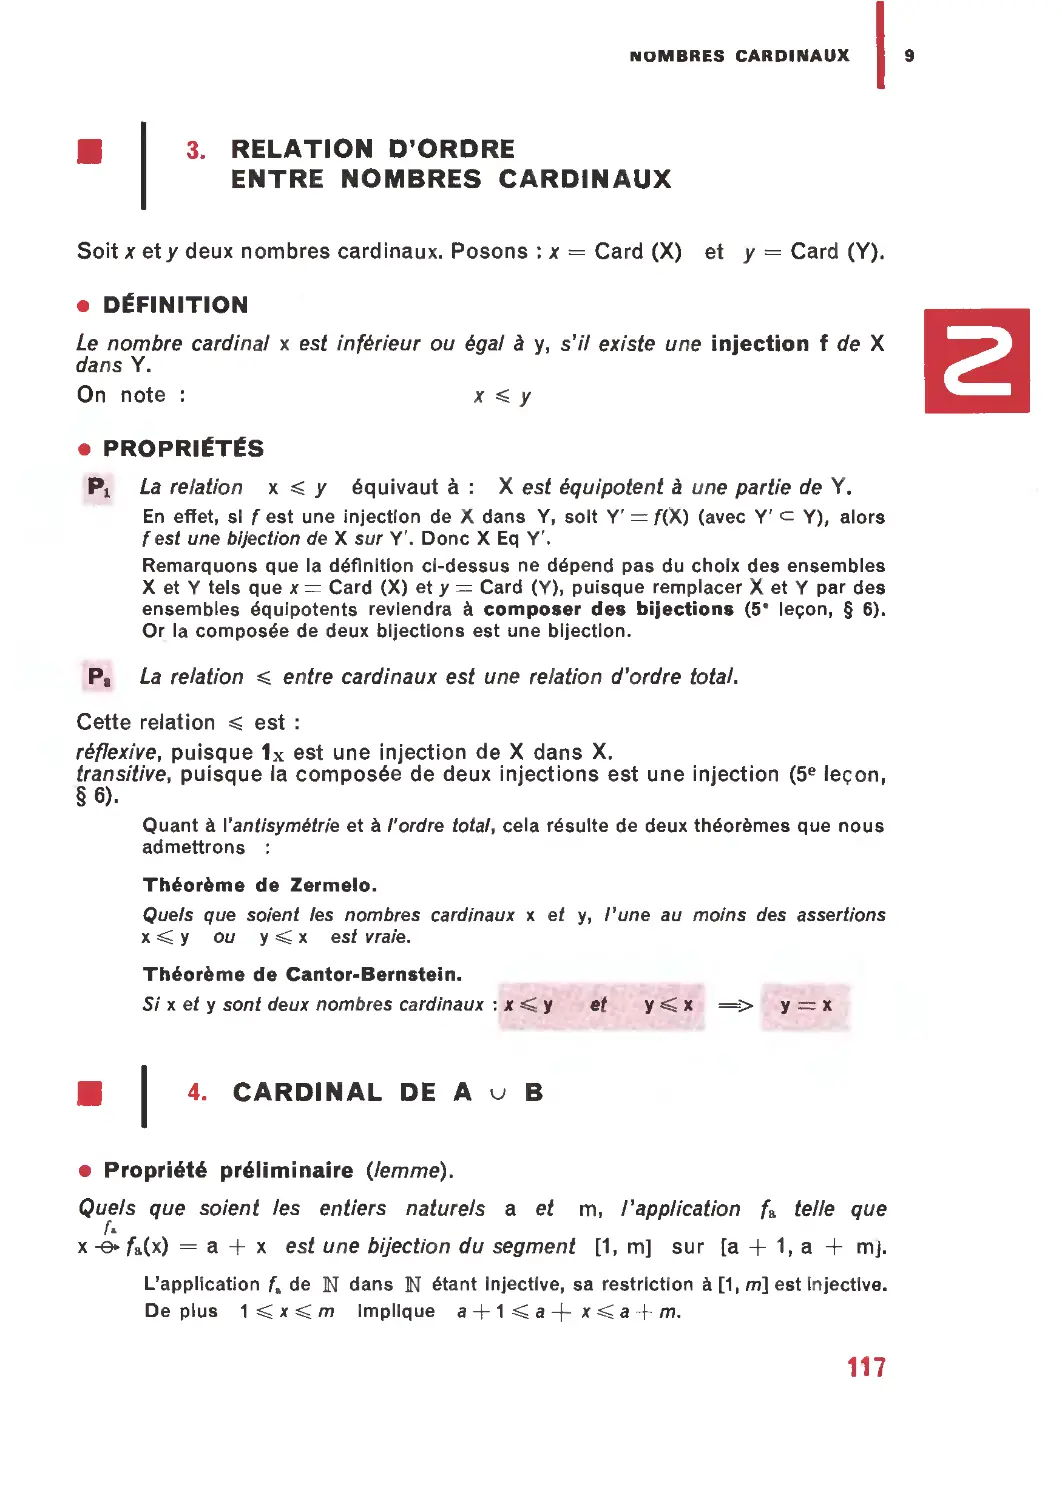 3. Relation d’ordre entre nombres cardinaux
4. Cardinal de A ∪ B